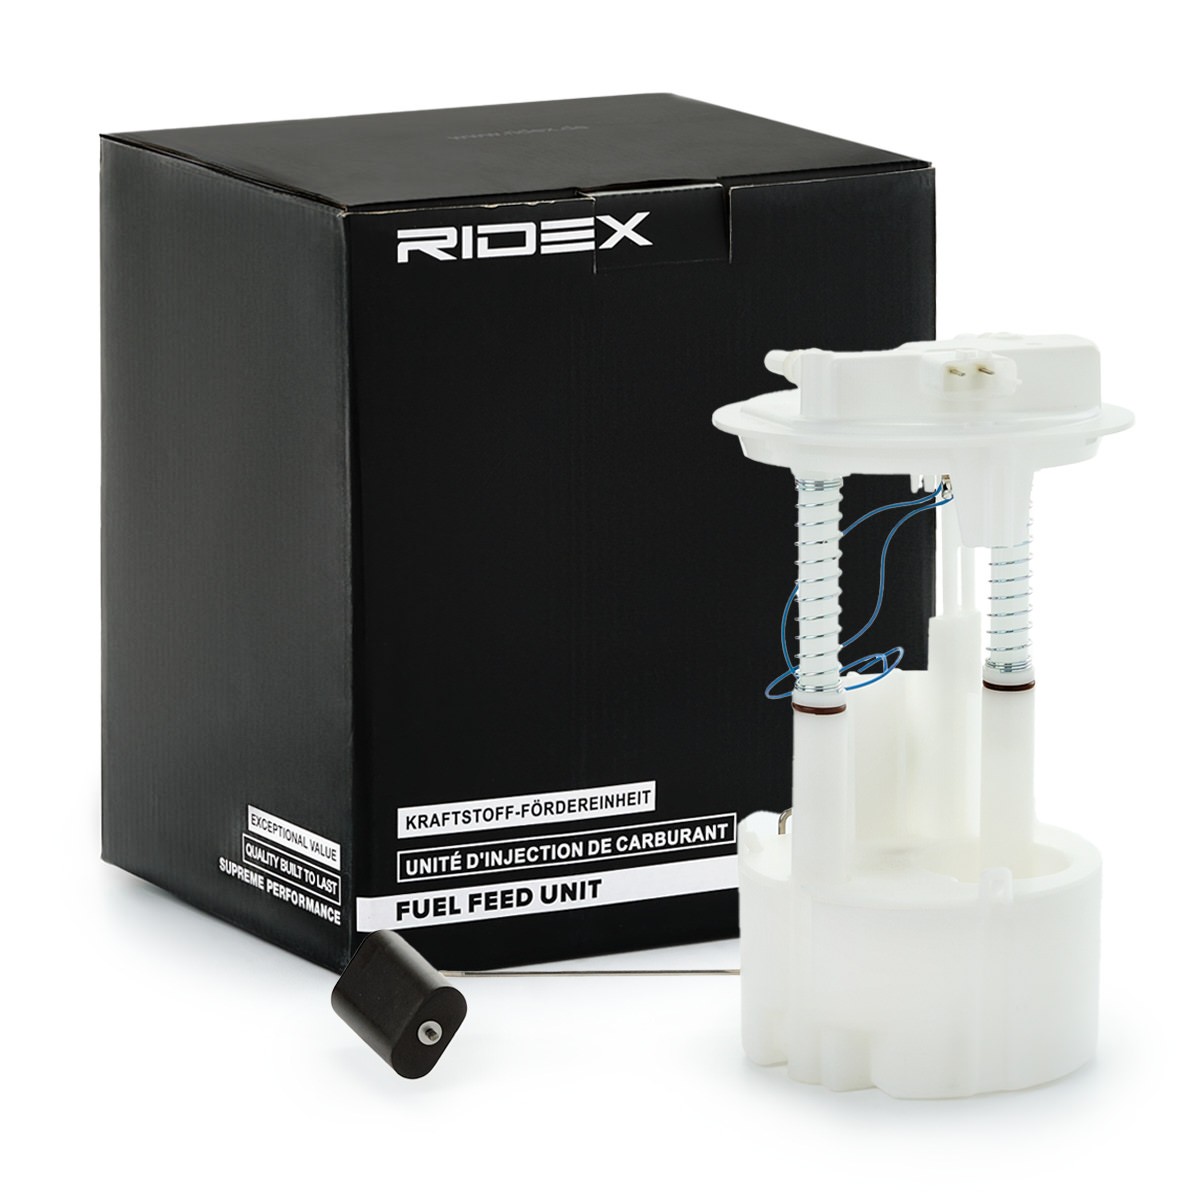 RIDEX 1382F0550 Fuel feed unit 17040AY600